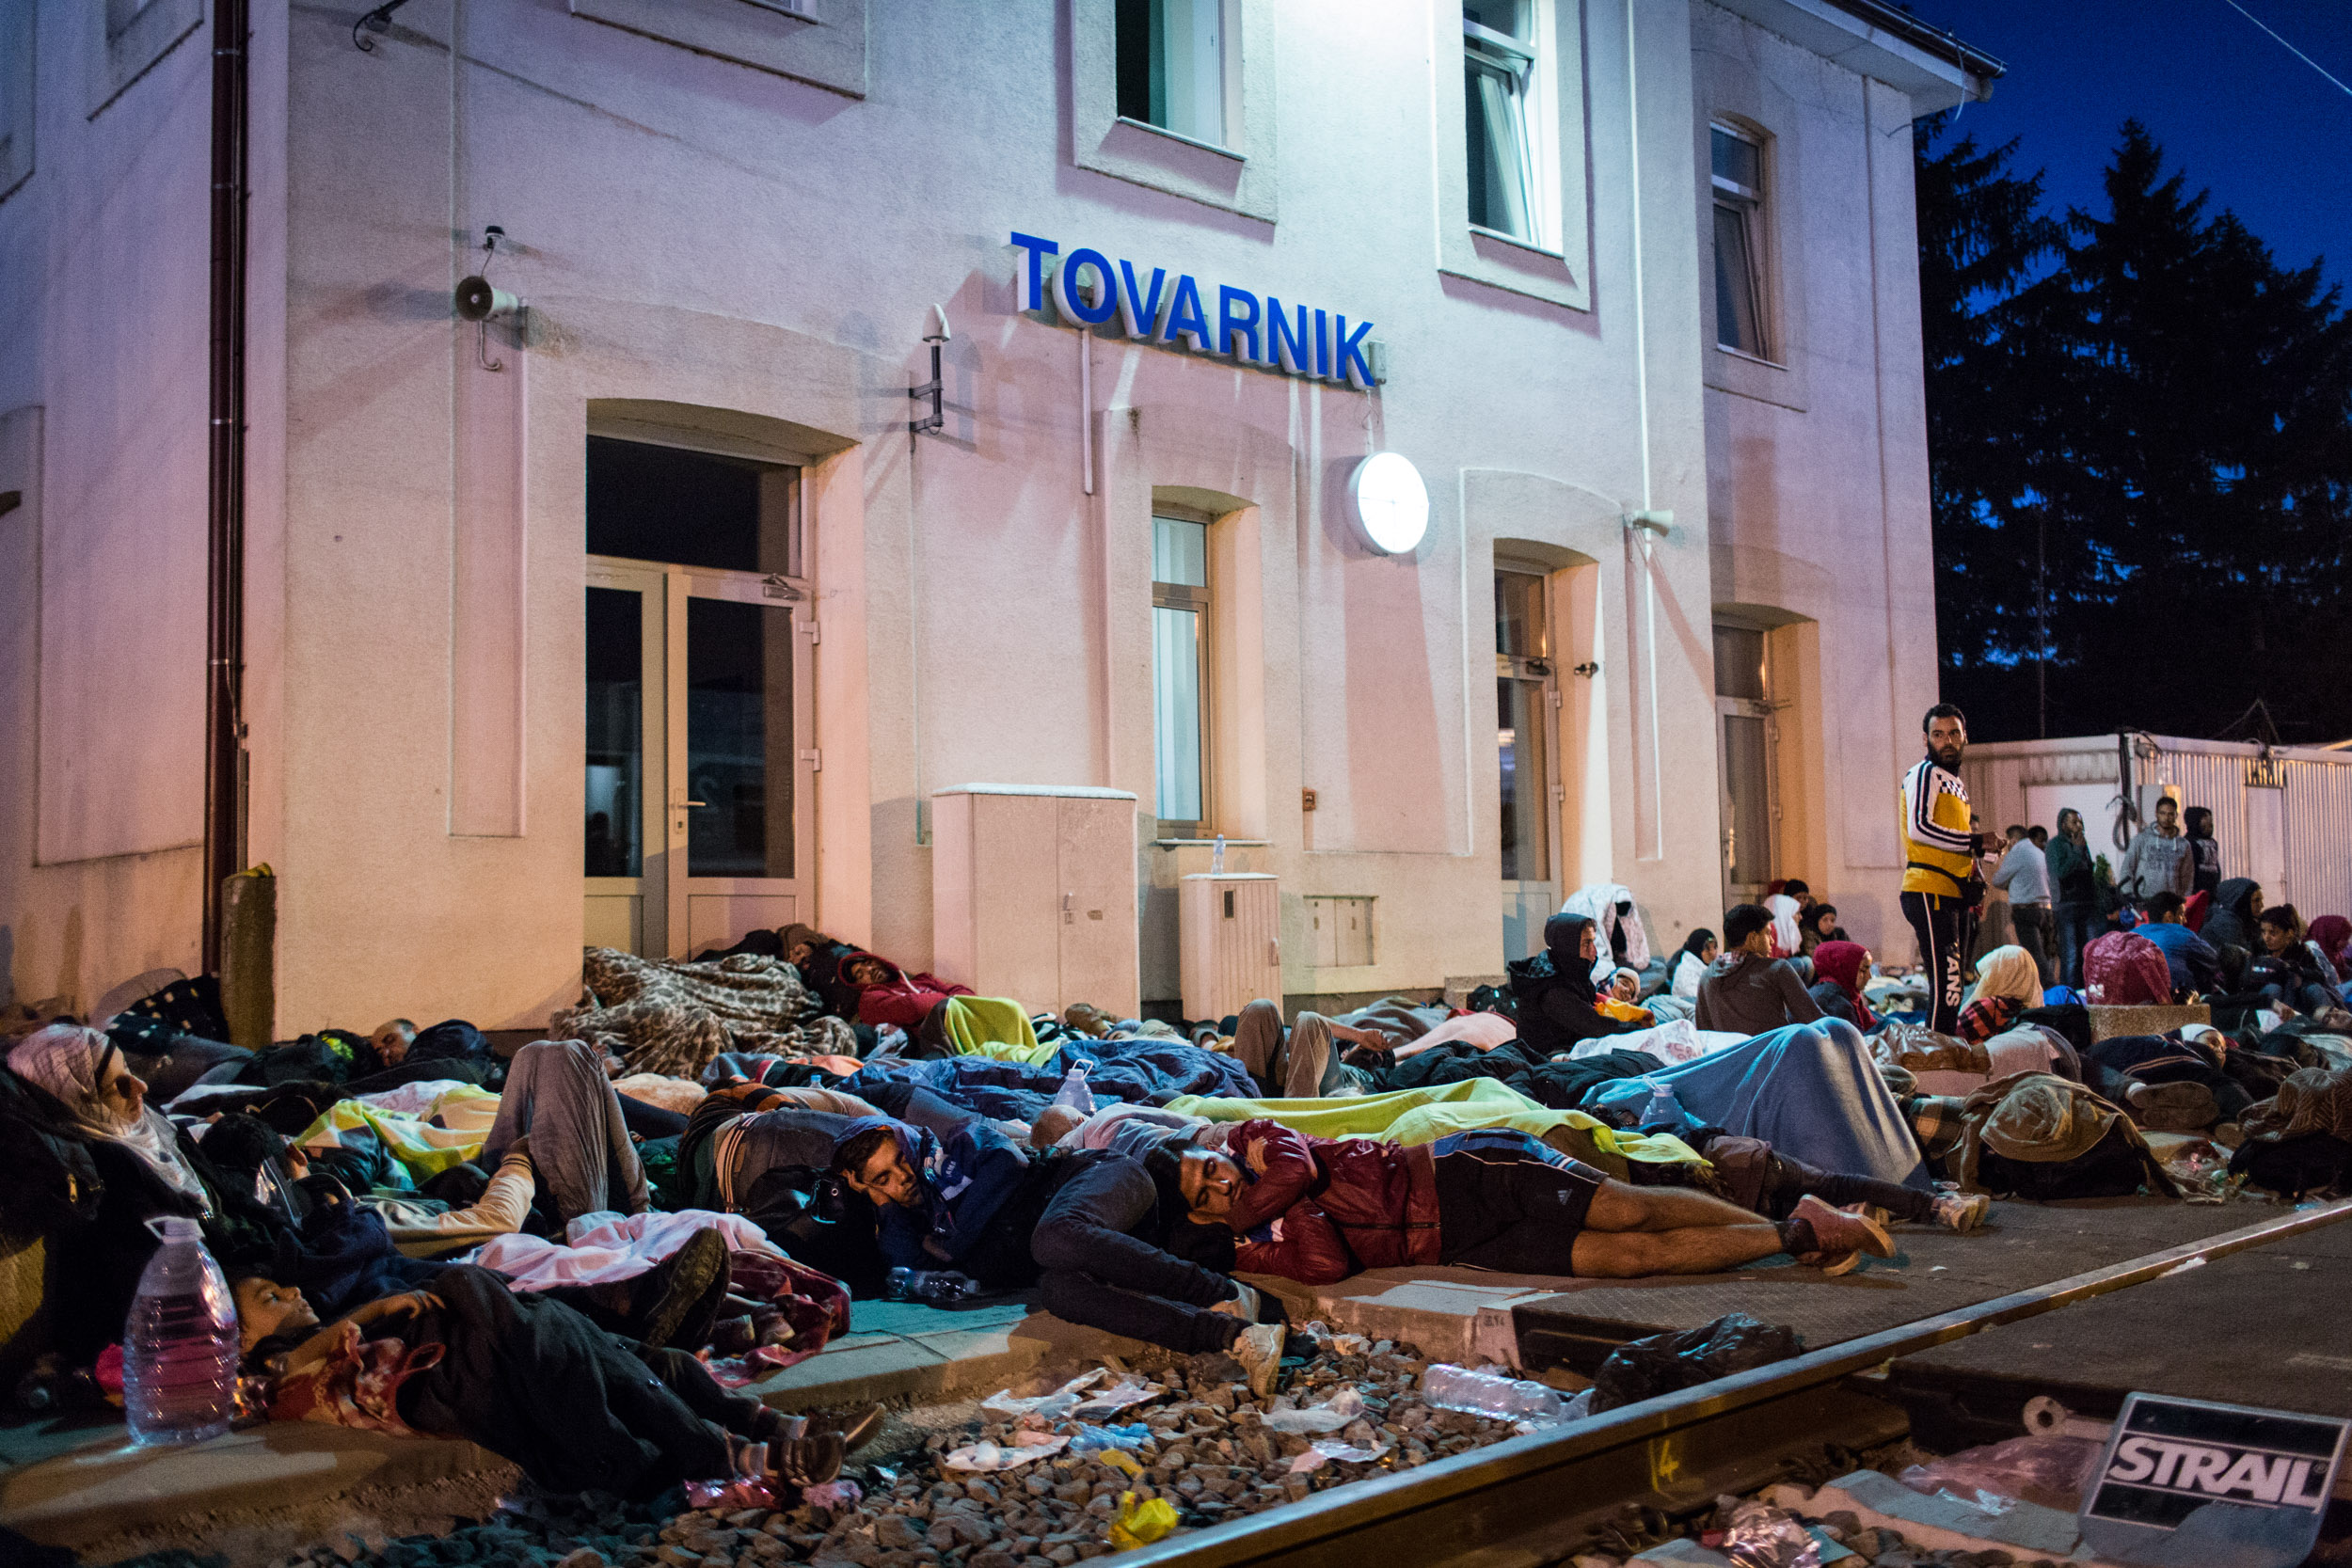 Flüchtlinge schlafen am Freitag, dem 18.9.2015, am Bahnhof von Tovarnik. Ab dem 15.9.2015 erreichten tausende Flüchtlinge Kroatien auf ihrem Weg nach Zentraleuropa, die kroatische Polizei war damit völlig überfordert.